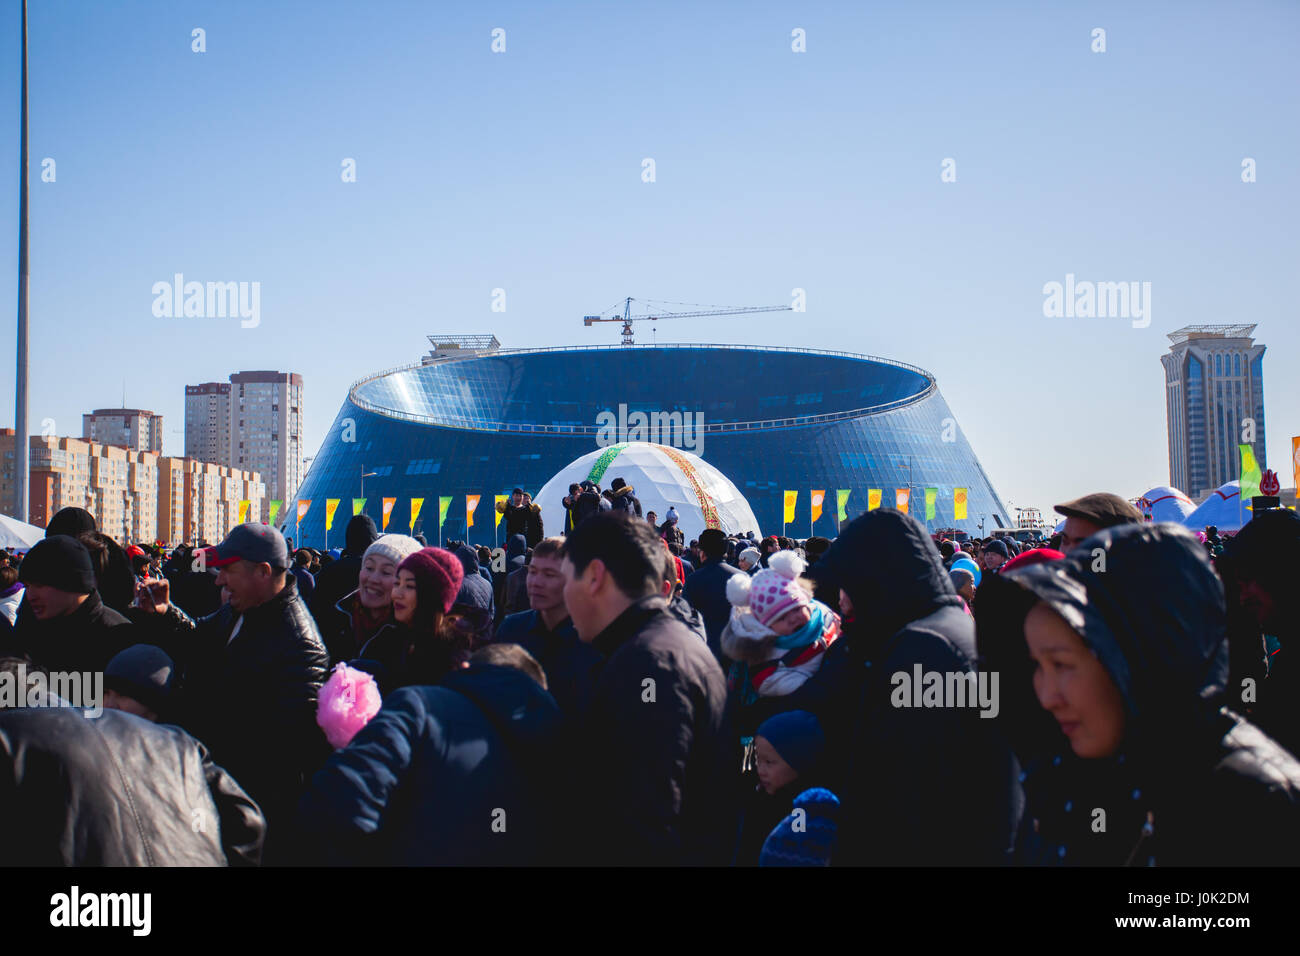 La maison de vacances traditionnelle de Nauryz à Astana le 22 mars. Les gens marchent sur une journée ensoleillée. Il y a des concerts et des compétitions différentes. Banque D'Images